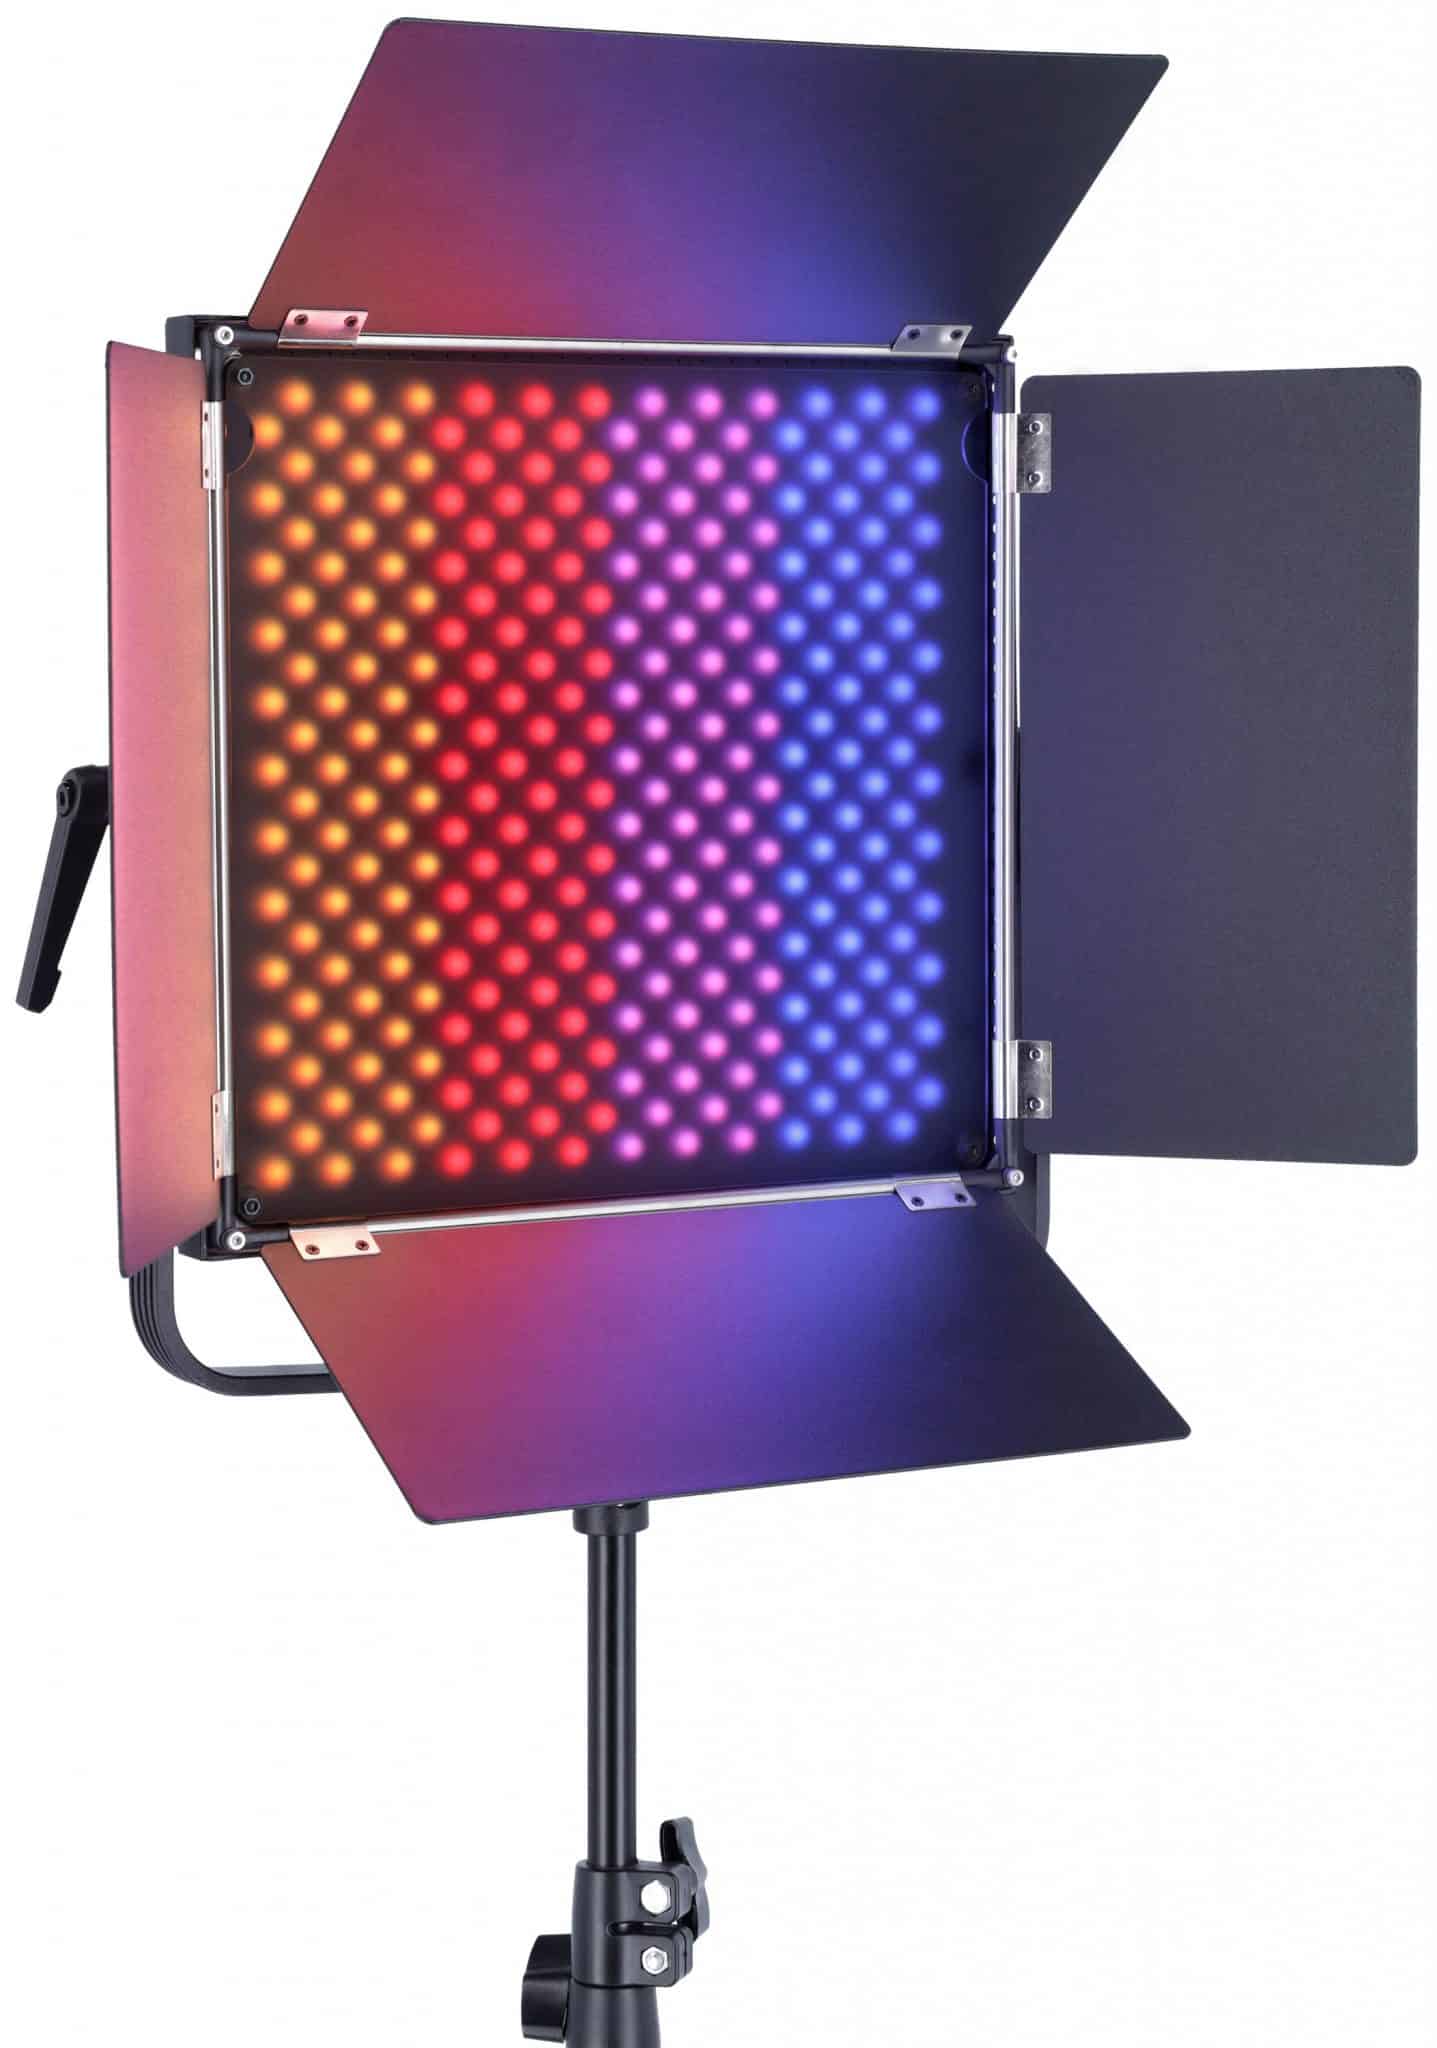 Rollei stellt die neue LED-Panel-Serie VIBE vor. 03